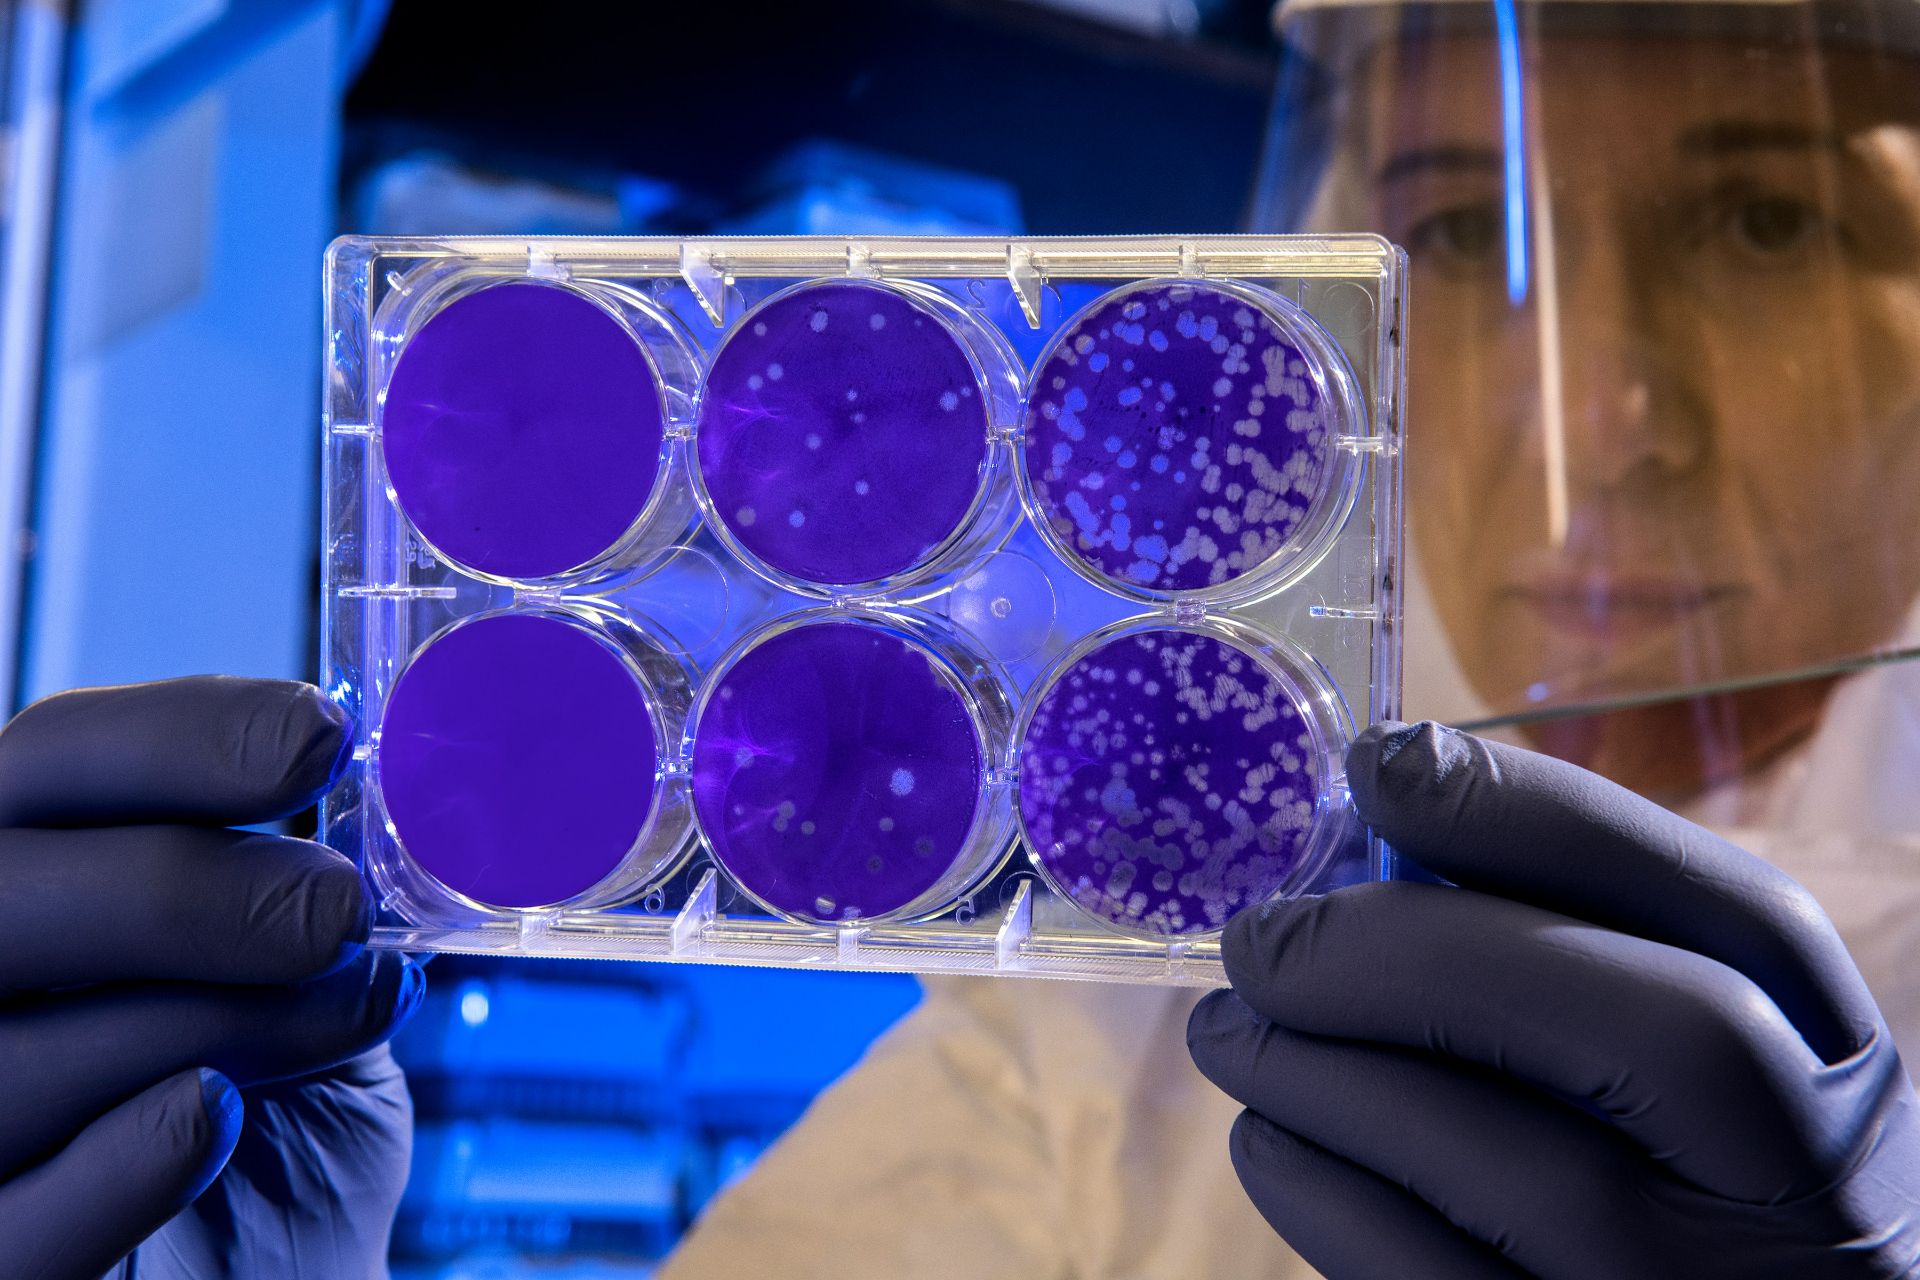 SUA: a fost detectată o bacterie care provoacă o boală infecţioasă gravă